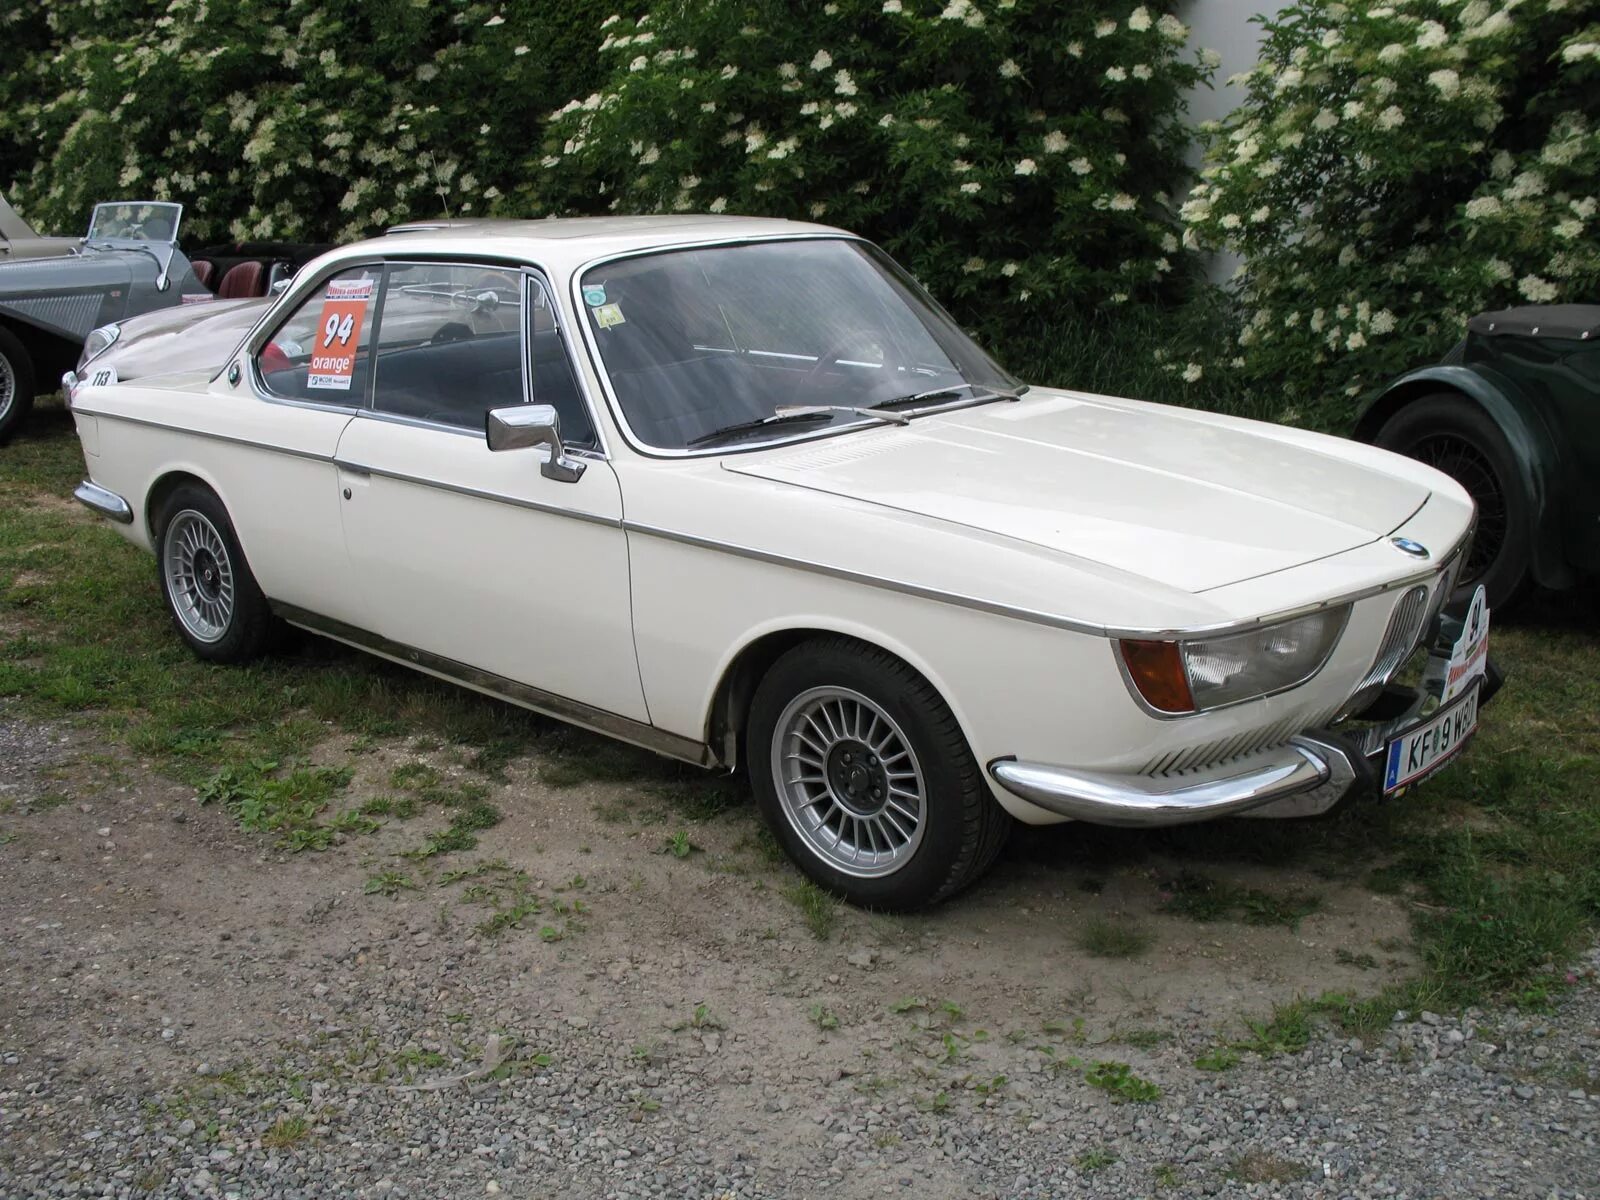 BMW 2000 C/CS. BMW 2000 CS 1966. BMW 2000 CS 1968. "BMW" "2000 C/CS" "1967" EF.